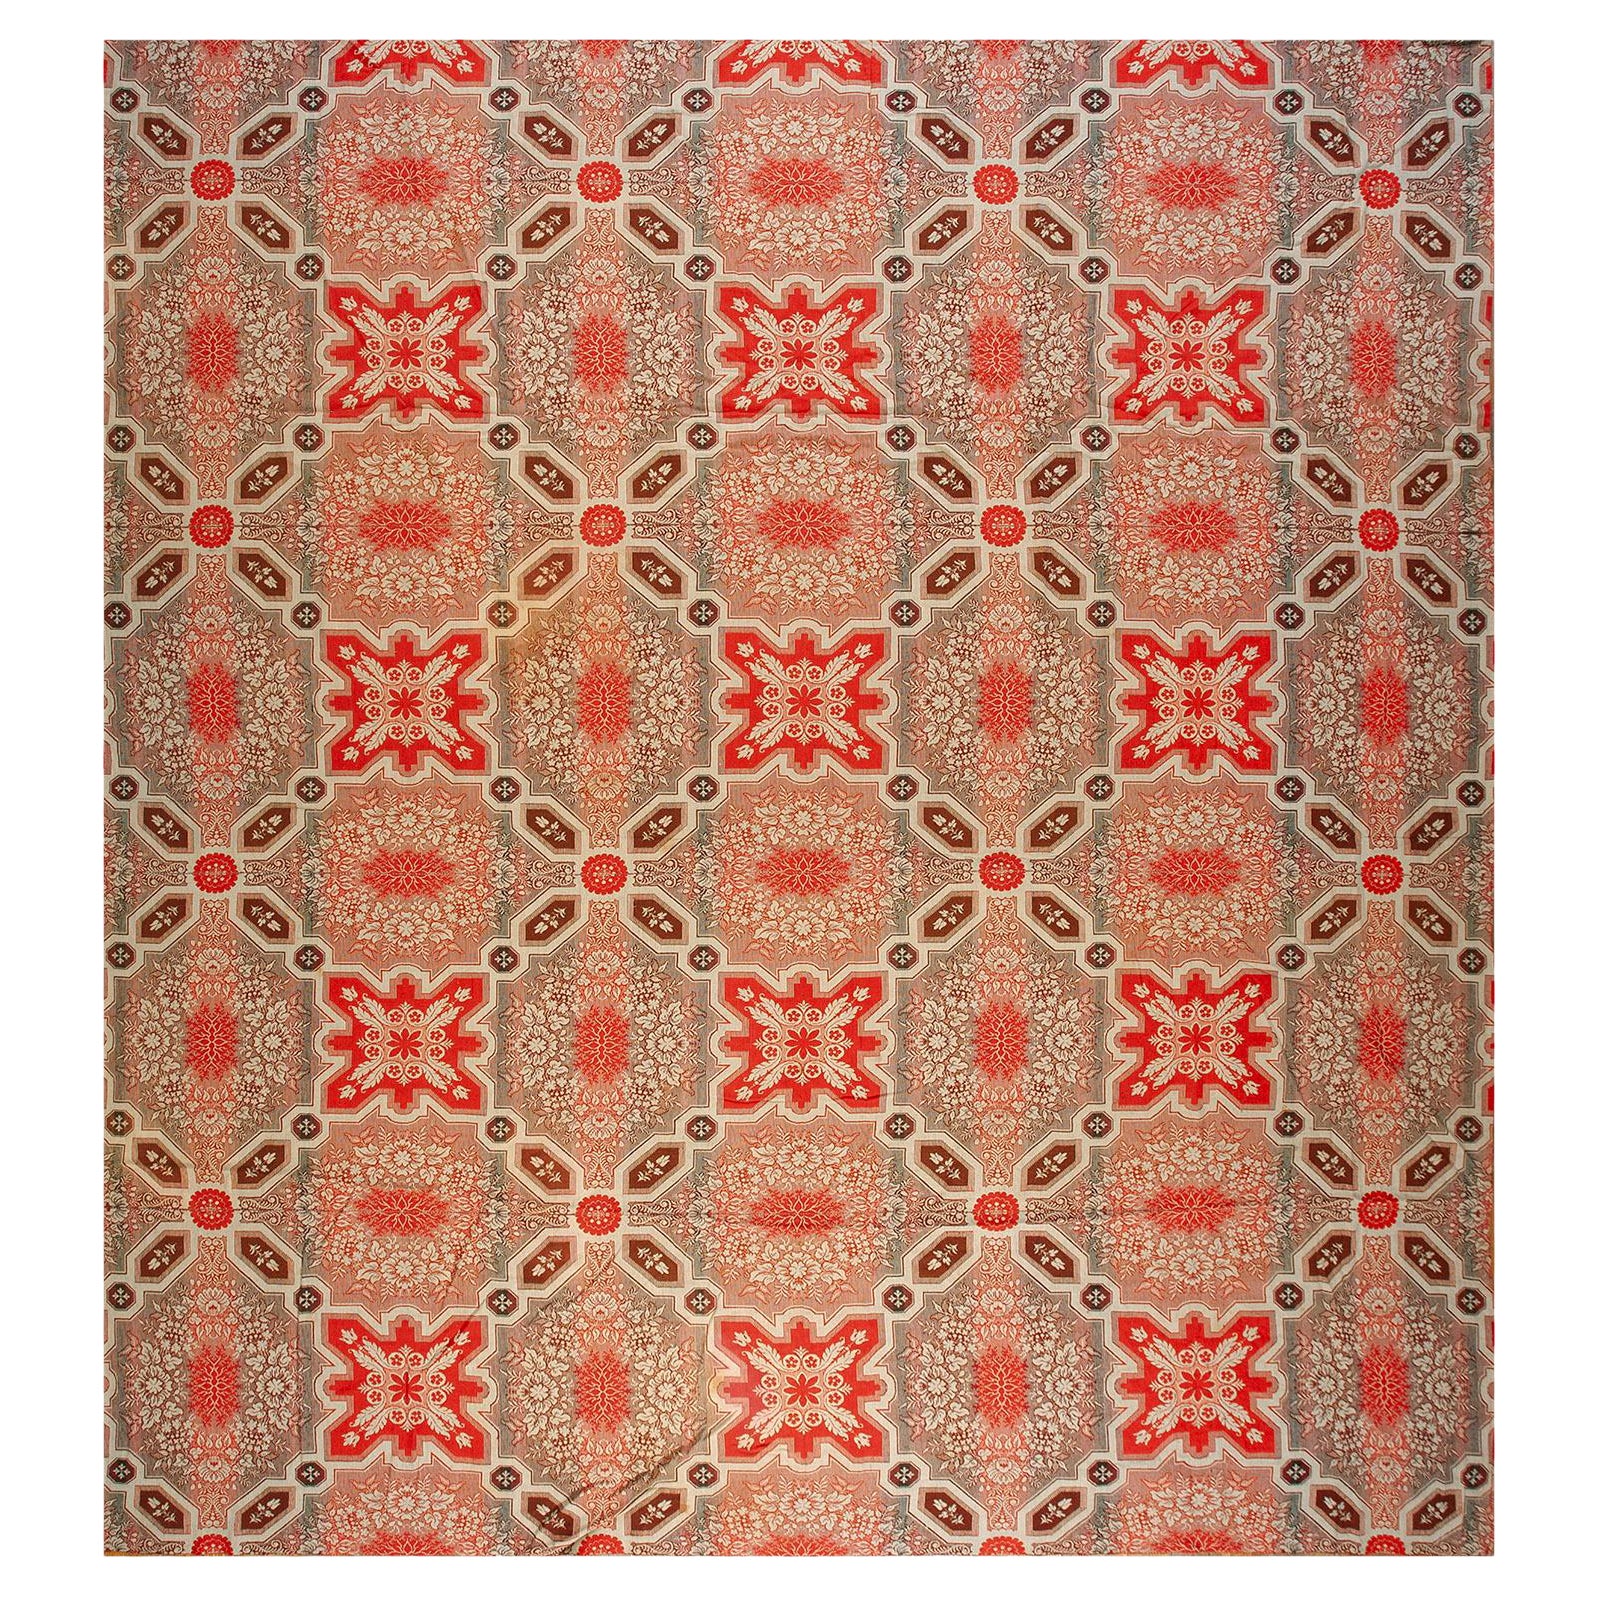 Amerikanischer Ingrain-Teppich aus der Mitte des 19. Jahrhunderts ( 3,66 m x 4,66 m)  - 381 x 406 cm )